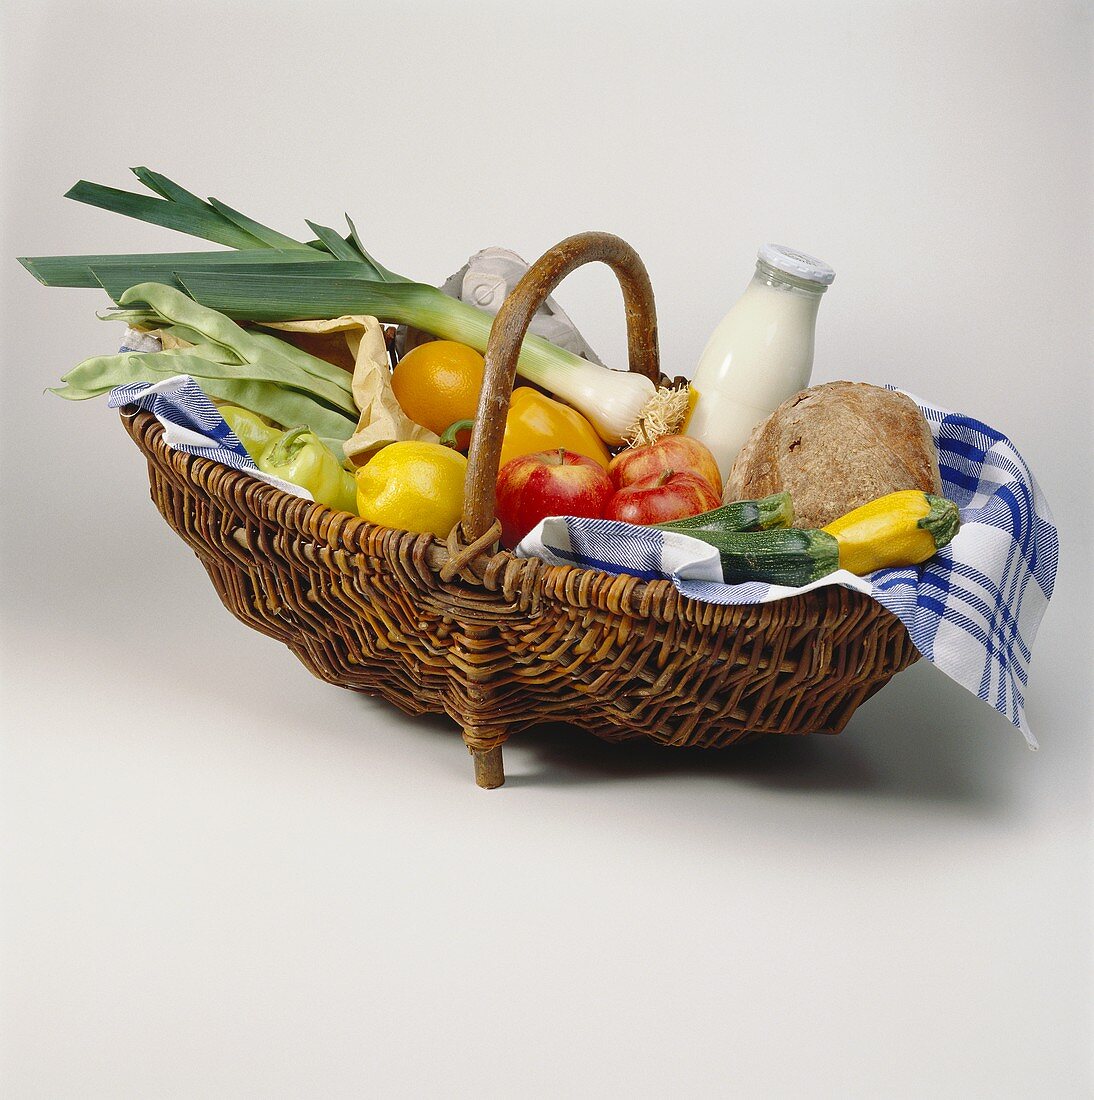 Gemüse, Früchte, Milch und Brot in einem Korb